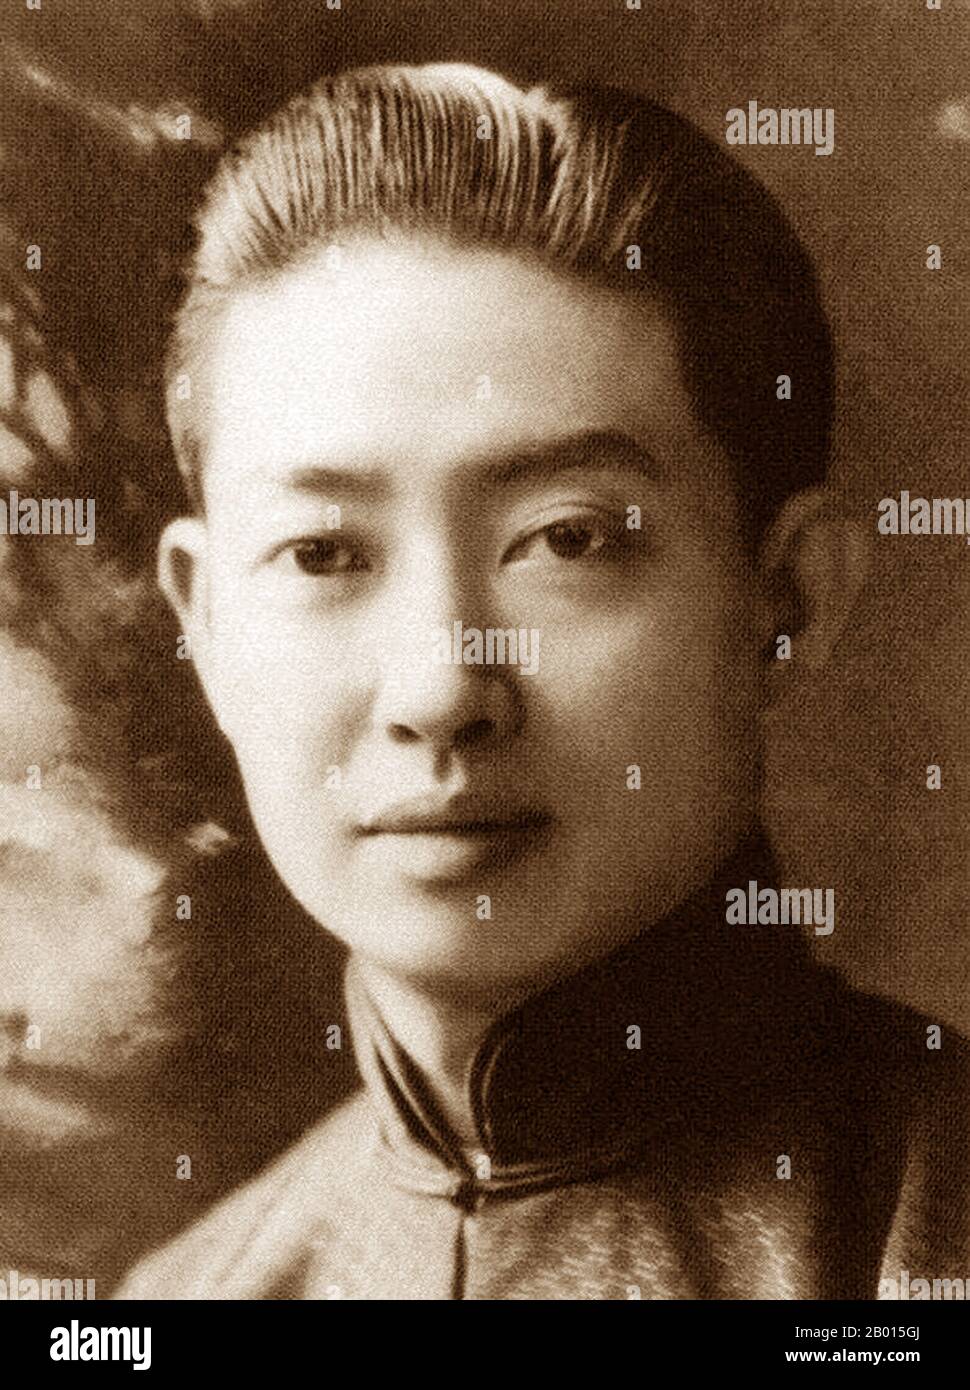 China: Mei Lanfang, berühmte Pekinger Opernkünstlerin (1894-1961). Mei Lan wurde in Taizhou, Jiangsu, als Sohn einer Familie von Künstlern der Pekinger Oper und Kunqu geboren. Sein Bühnendebüt gab er 1904 im Alter von 10 Jahren am Guanghe Theater. In seiner 50-jährigen Bühnenlaufbahn behielt er eine starke Kontinuität bei, während er immer an neuen Techniken arbeitete. Seine berühmtesten Rollen waren die der weiblichen Charaktere; die gekonnte Darstellung von Frauen gewann ihn internationale Anerkennung. Er spielte auch eine wichtige Rolle bei der Fortsetzung der Aufführungstradition von Kunqu. Stockfoto